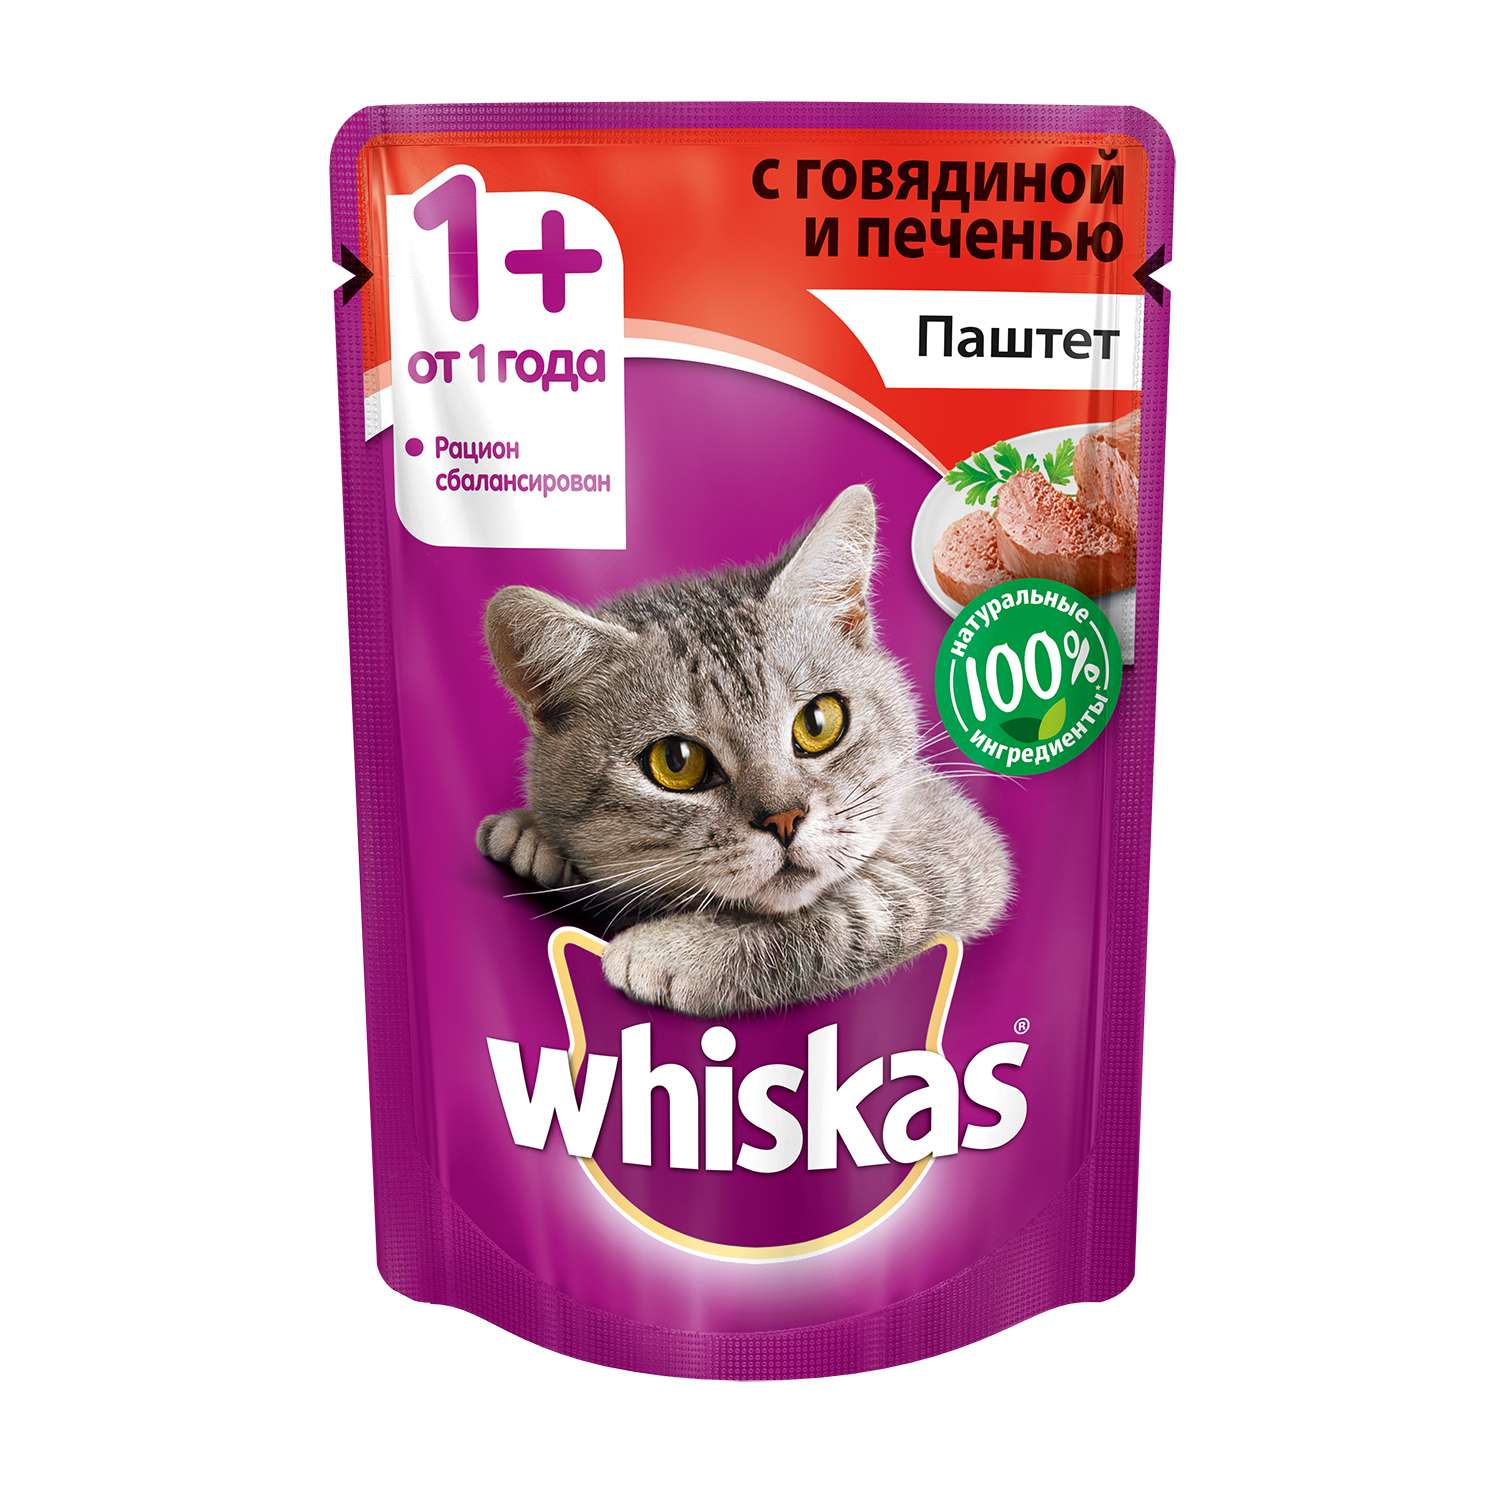 Корм влажный для кошек Whiskas 85г паштет с говядиной и печенью пауч - фото 1